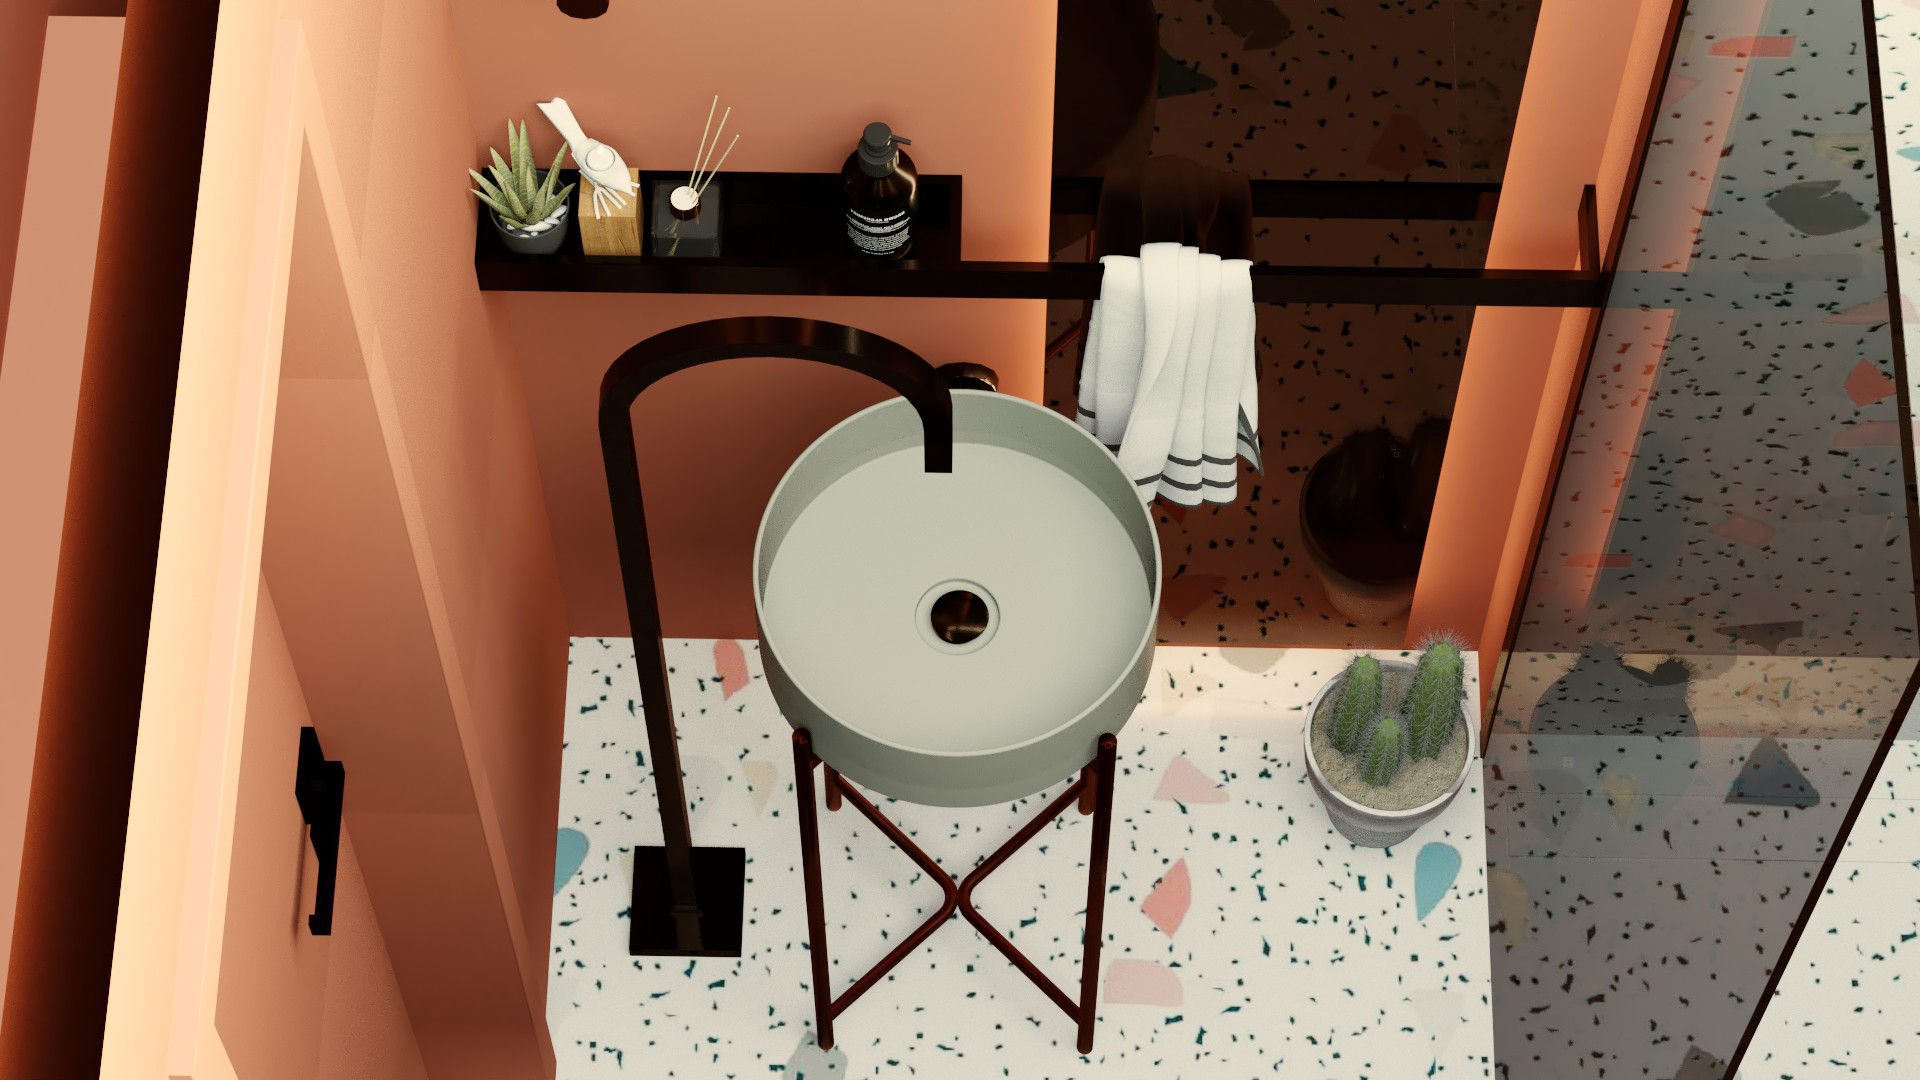 Casa de banho minimalista, Letícia Gurgel design de interiores Letícia Gurgel design de interiores Minimalist style bathrooms